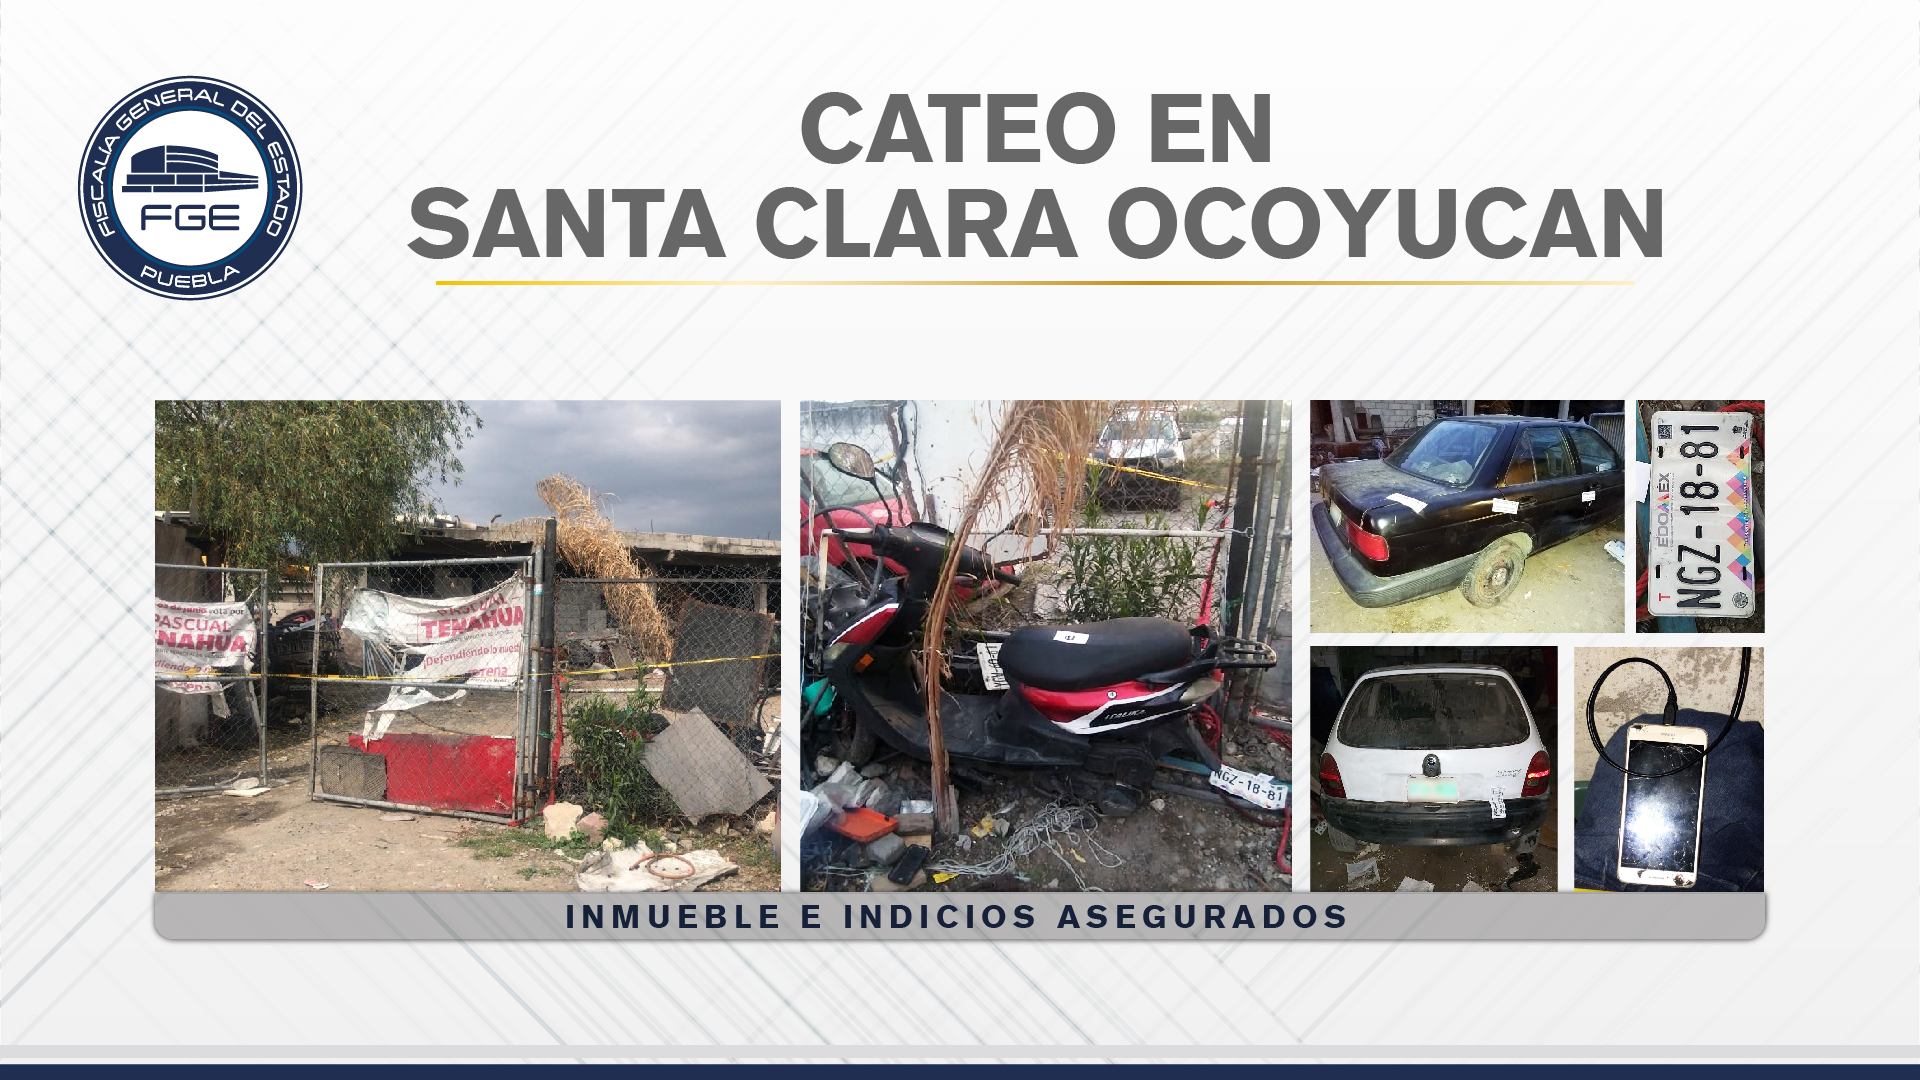 En Santa Clara Ocoyucan, Fiscalía cateó un inmueble con vehículos robados